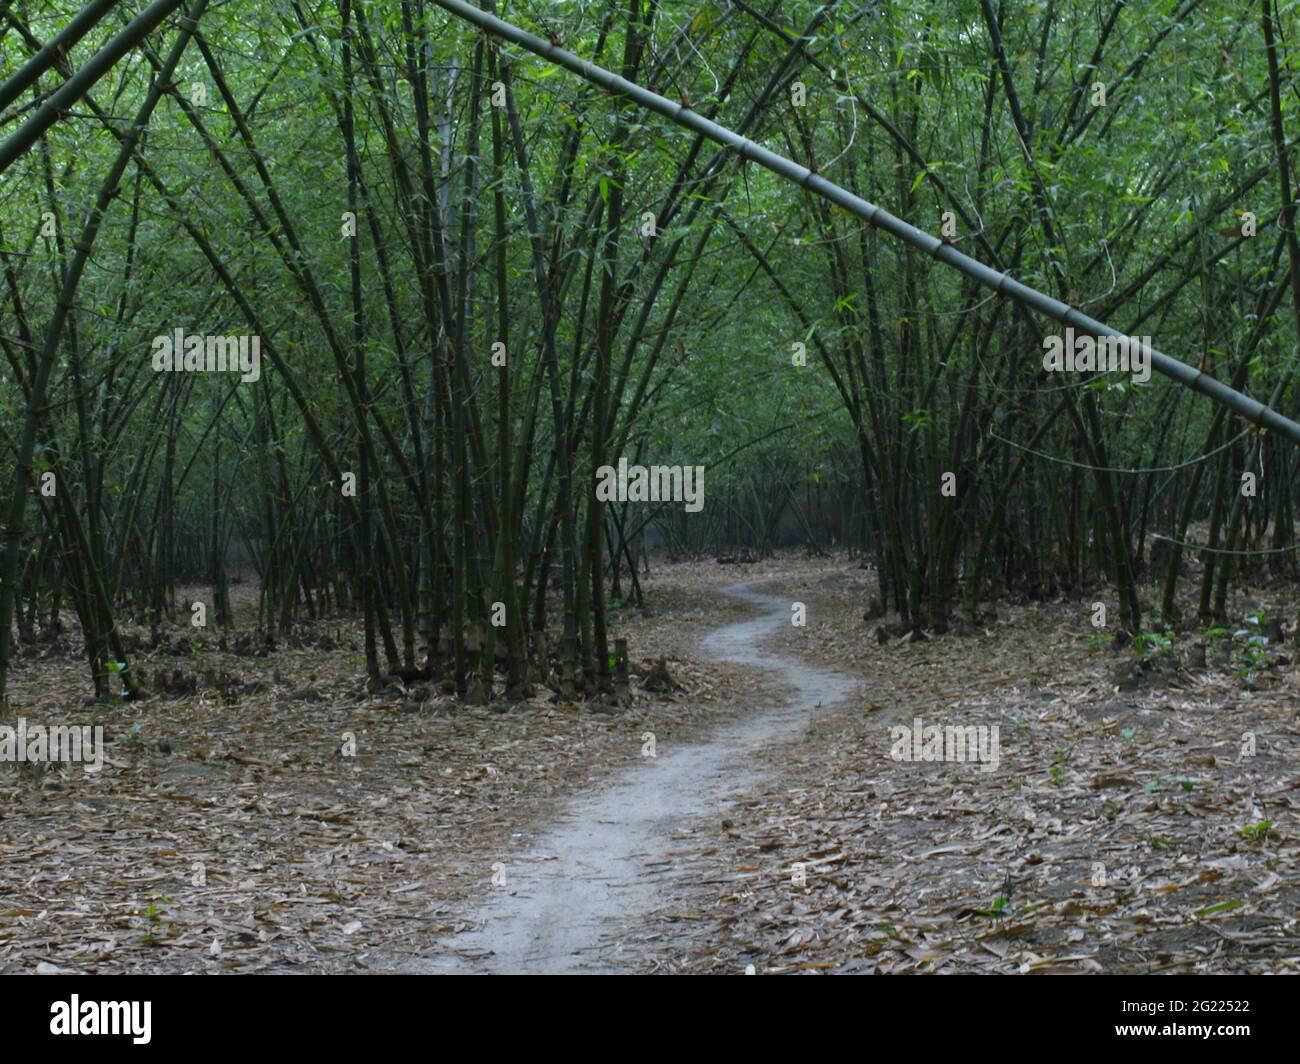 Percorso in Bamboo (disambiguazione) foresta, villaggio rurale dell'India Foto Stock